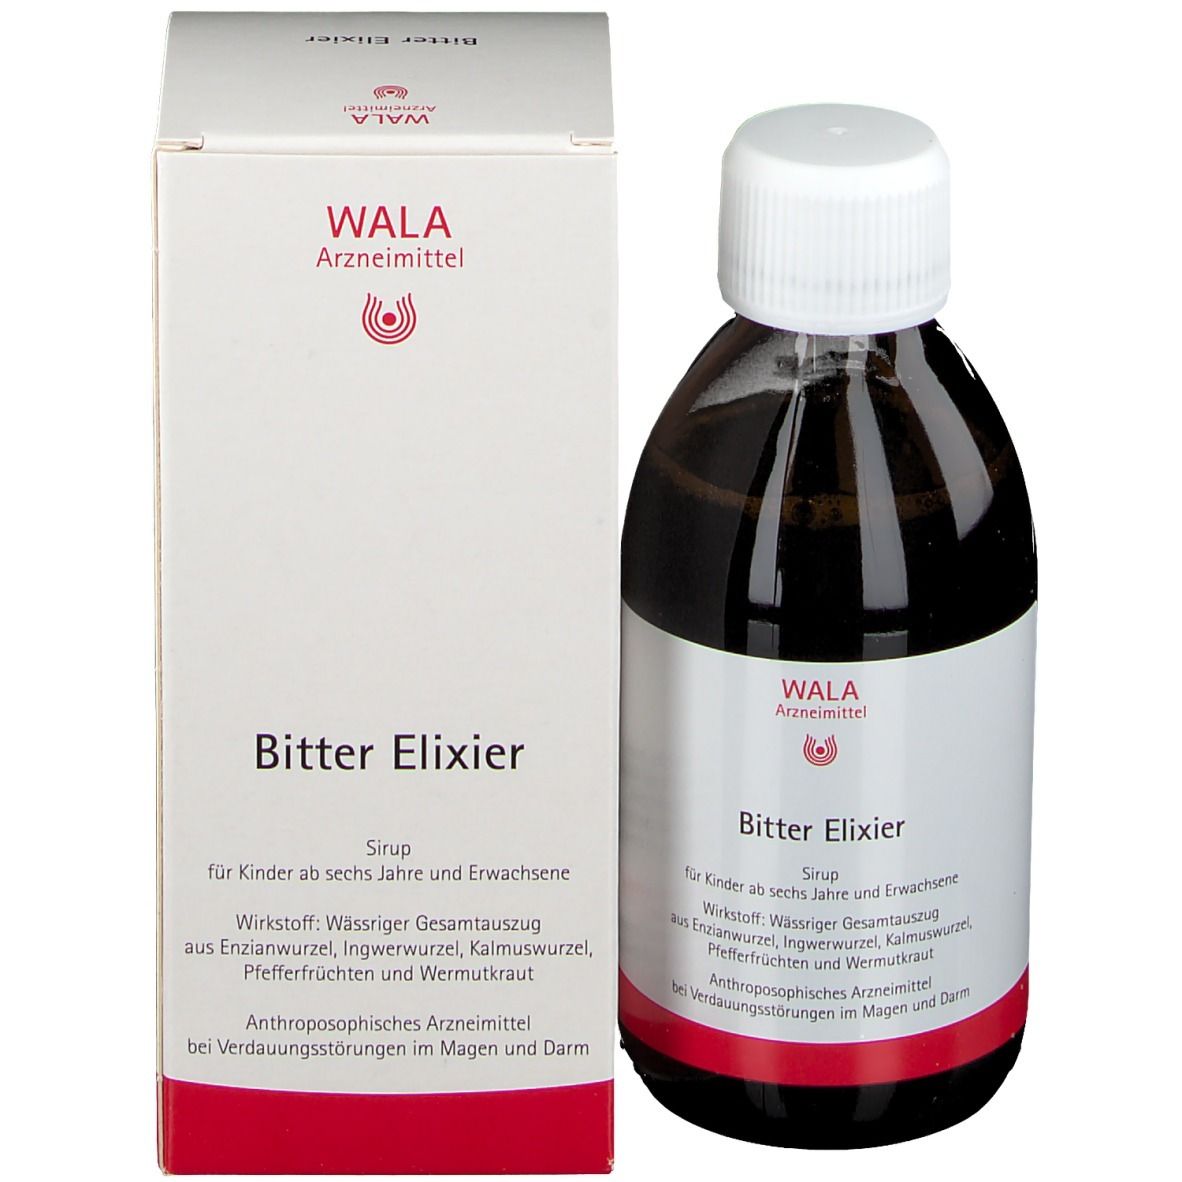 WALA® Bitter Elixier